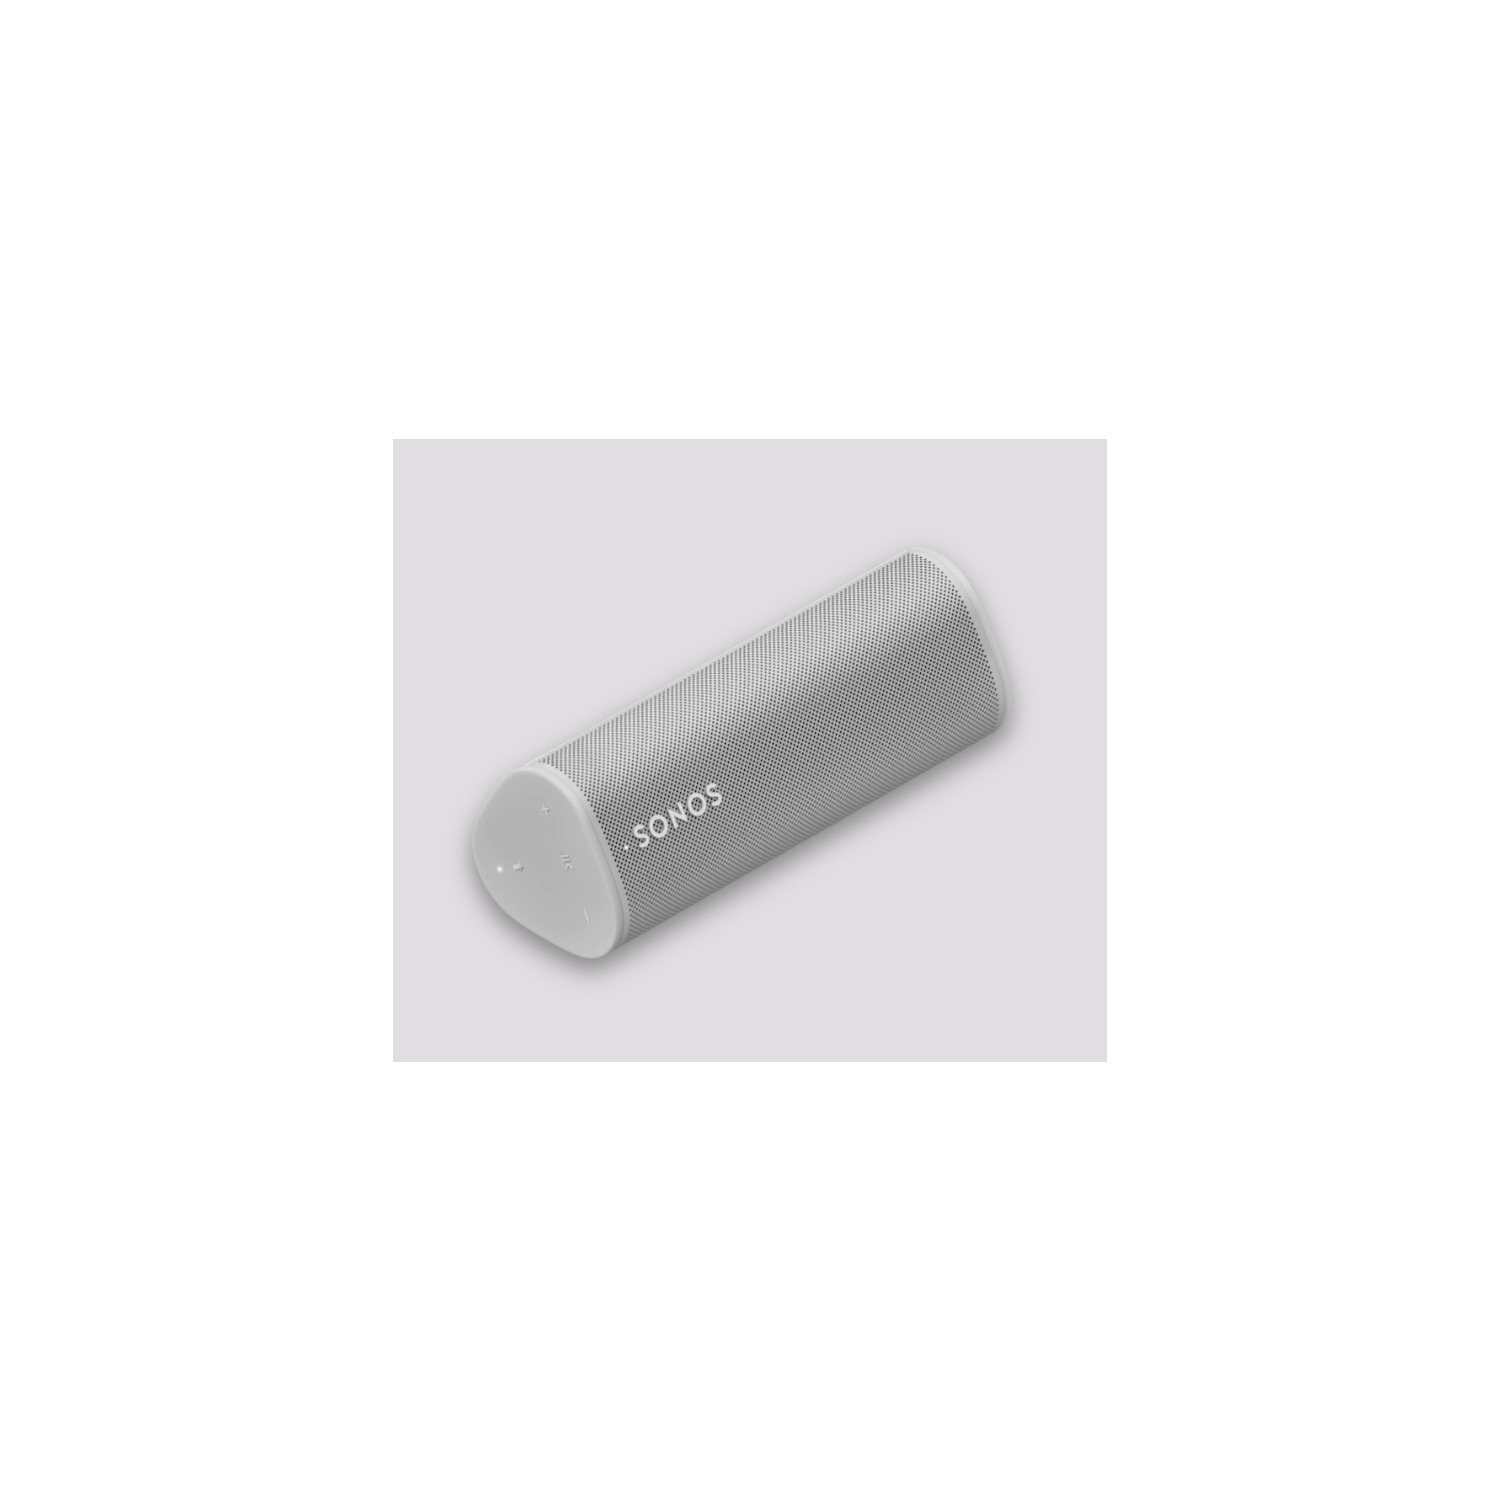 Sonos Roam - Lunar White - The portable smart speaker for all your 